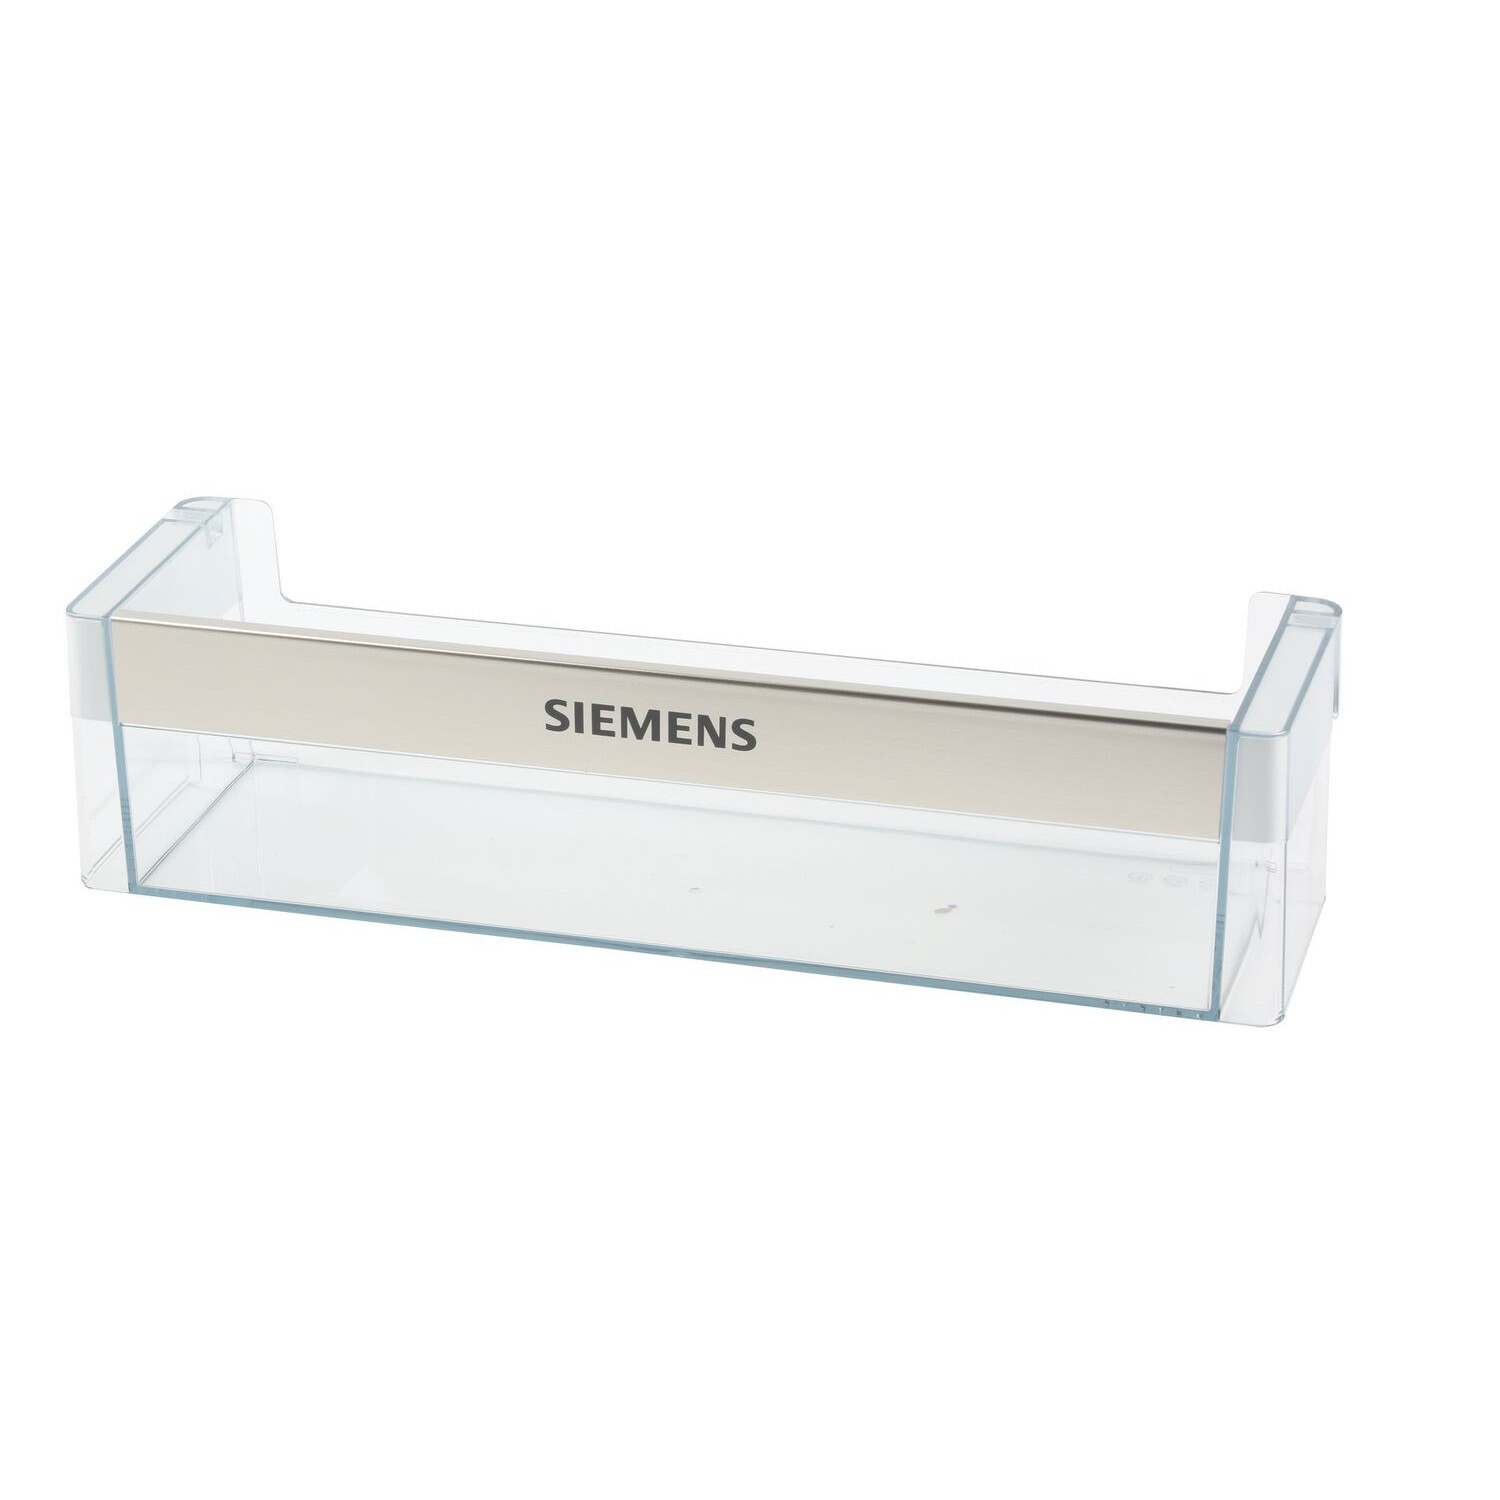 Genuine Siemens Fridge & Freezer Door Middle Shelf Rack Tray 